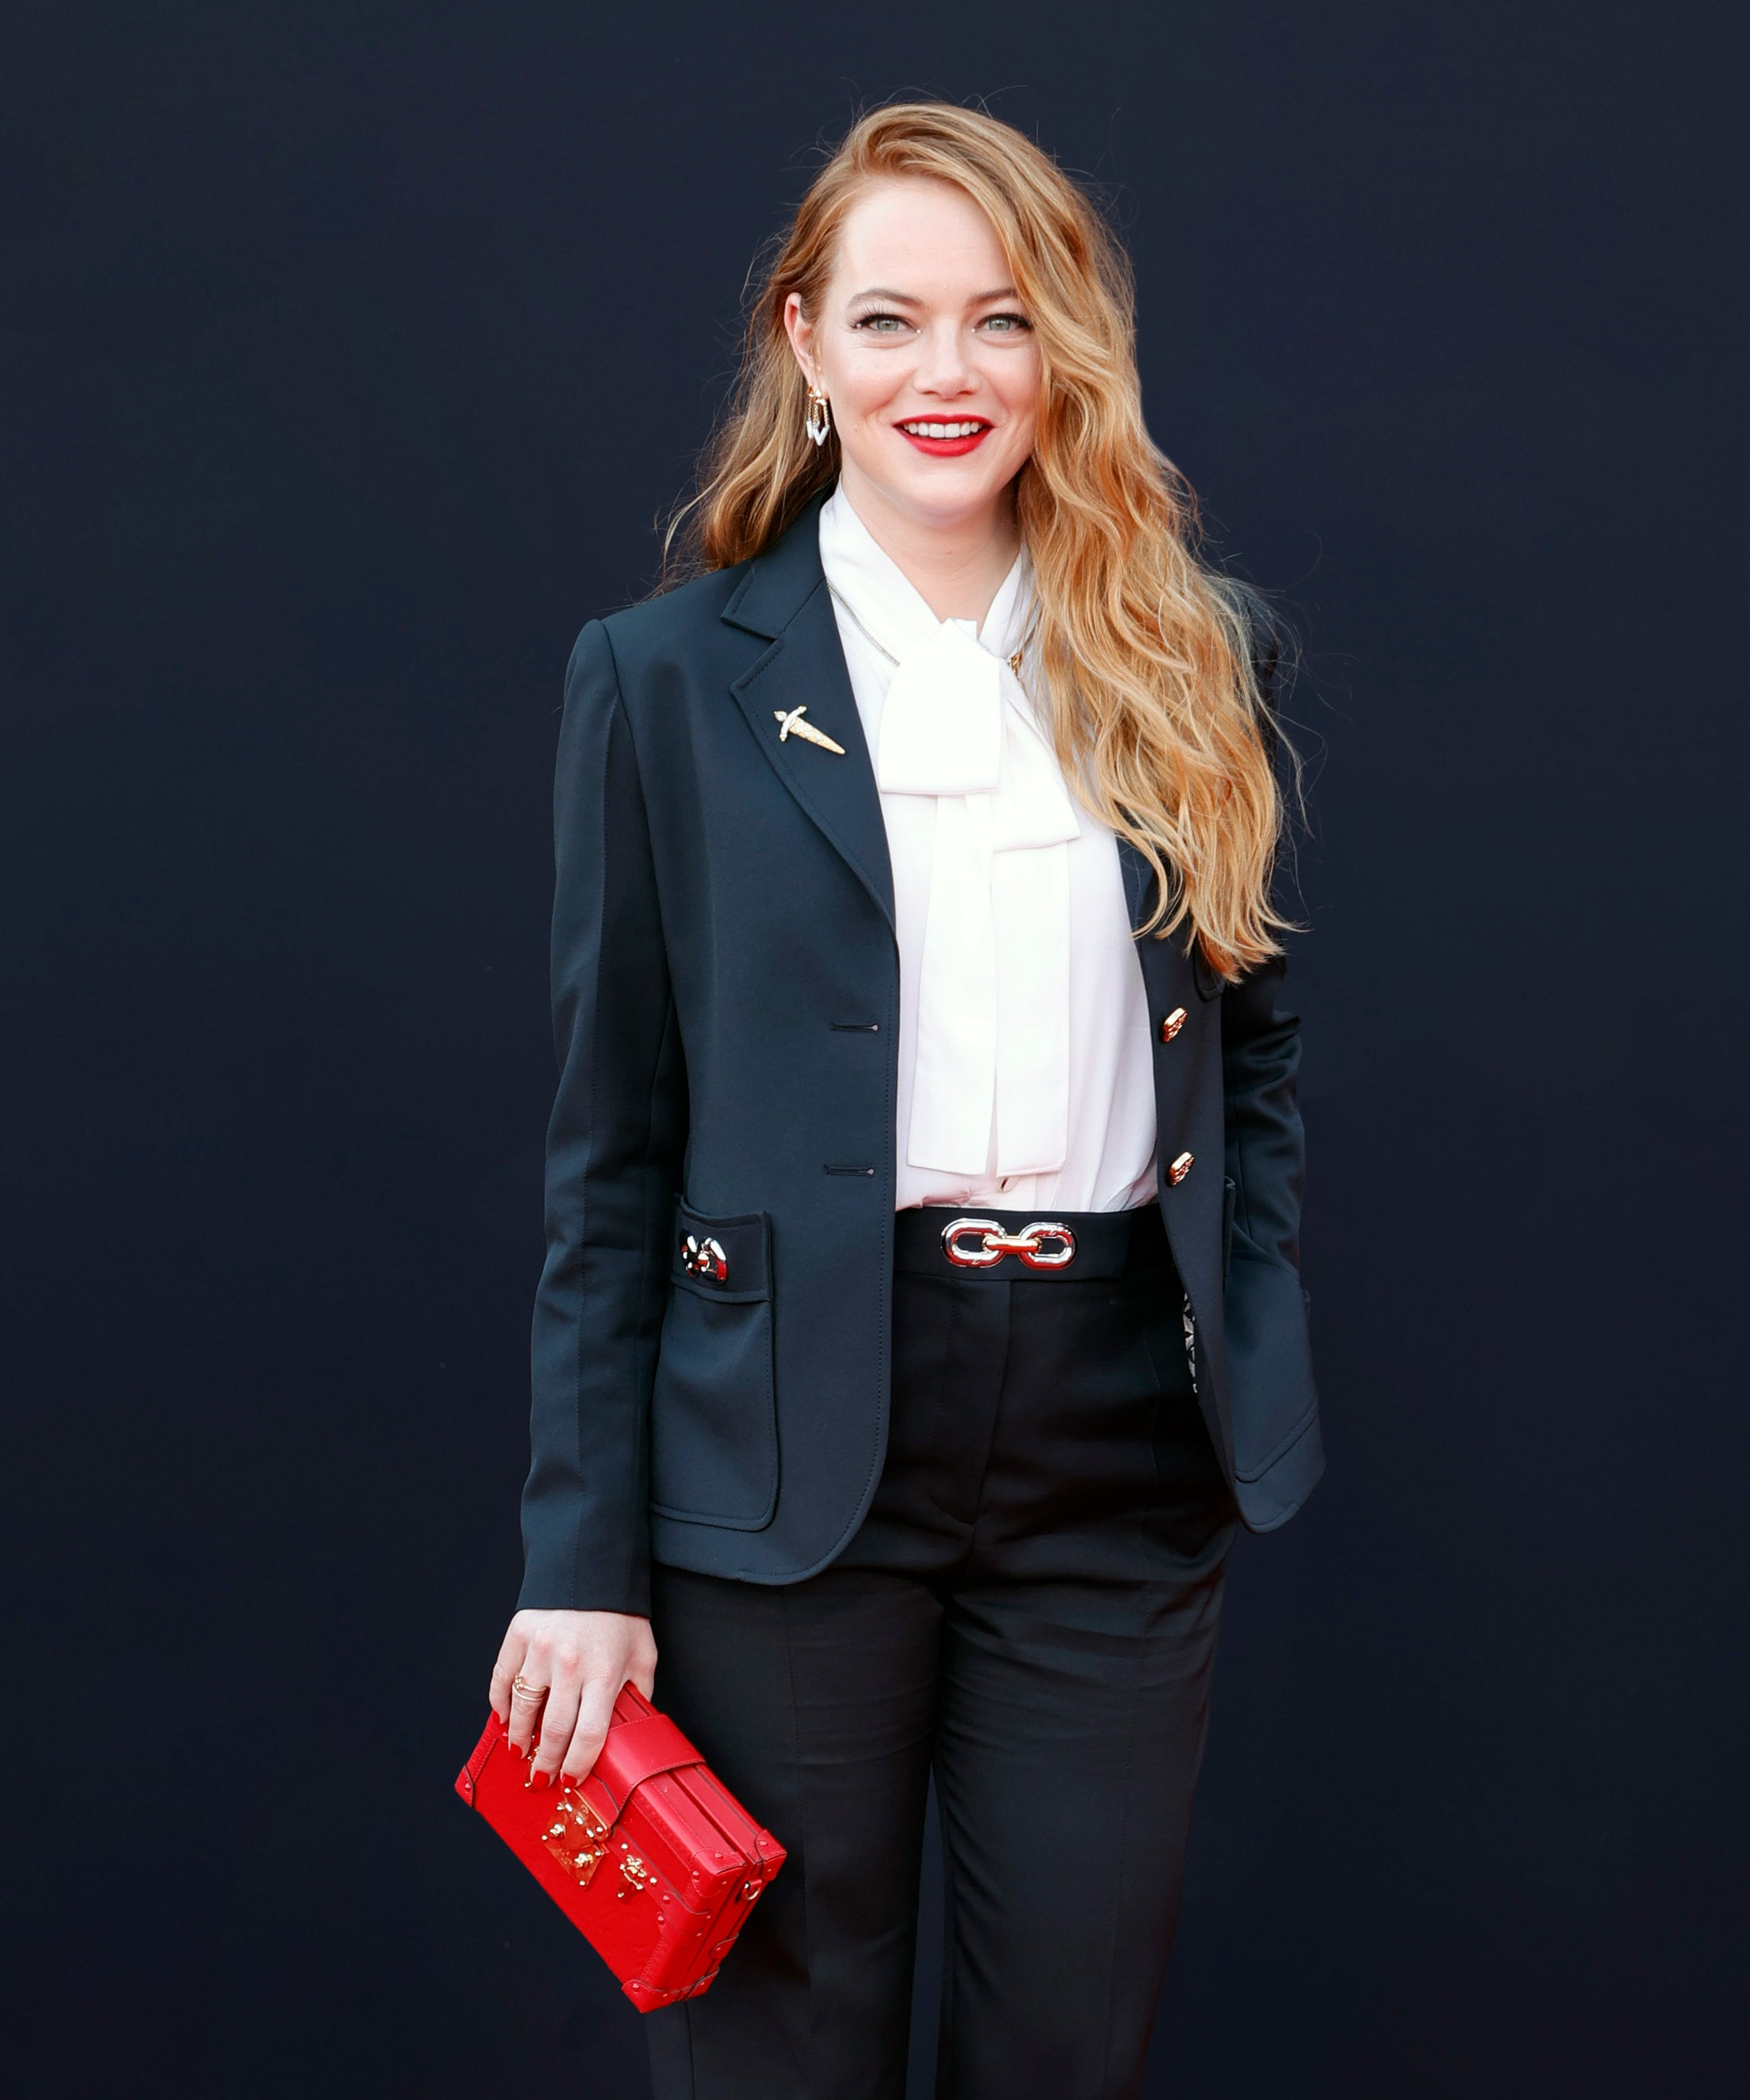 Emma Stone Wore Louis Vuitton To The 'Cruella' LA Premiere